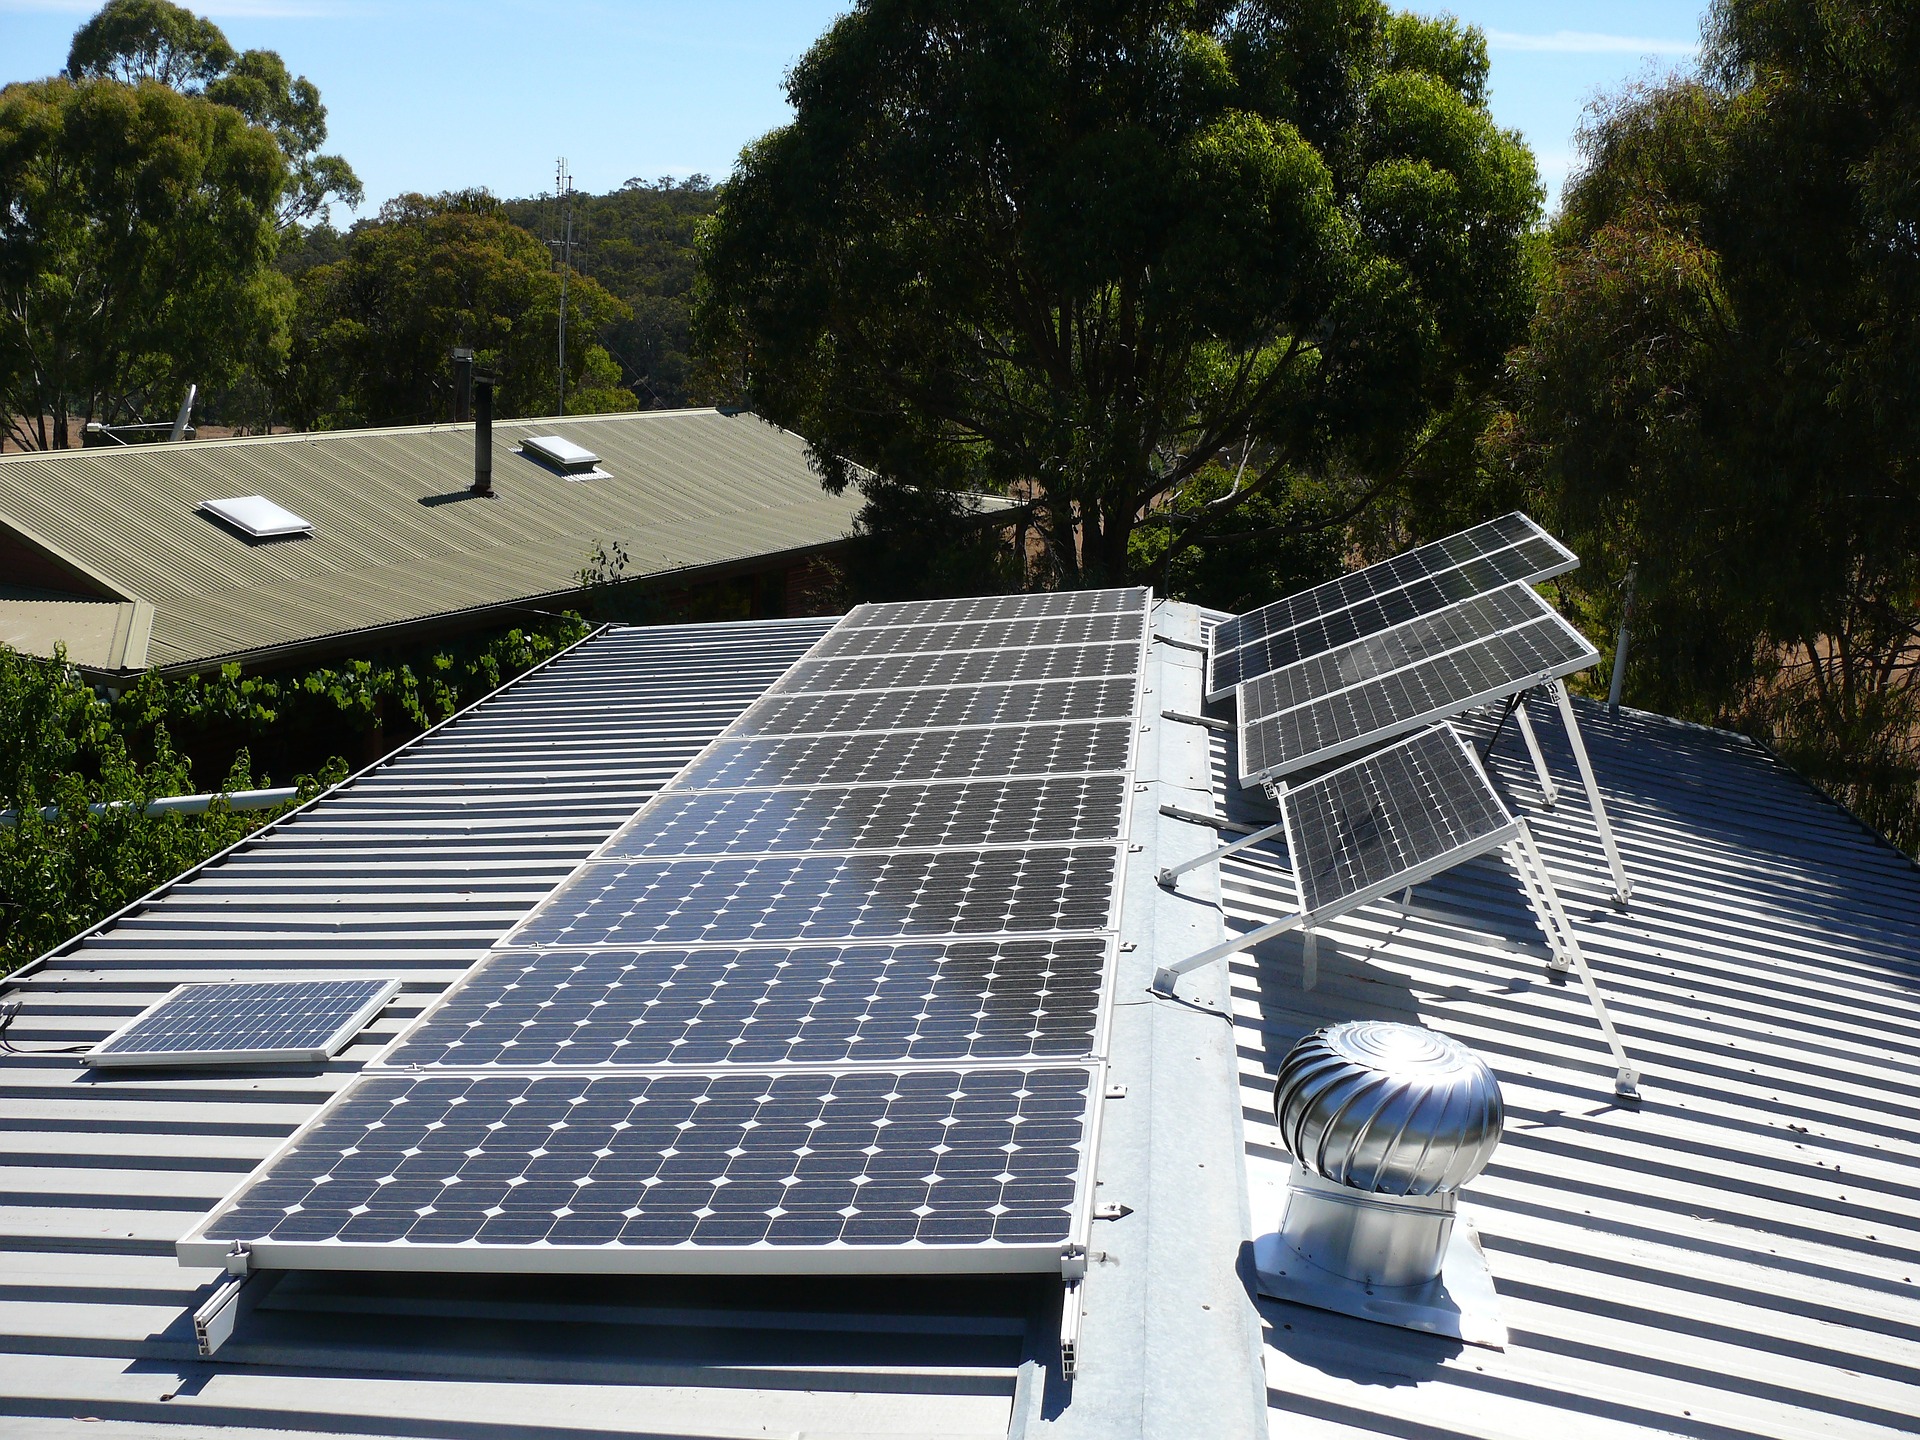 Lokale energiecoöperatie zoekt daken voor zonnepanelen